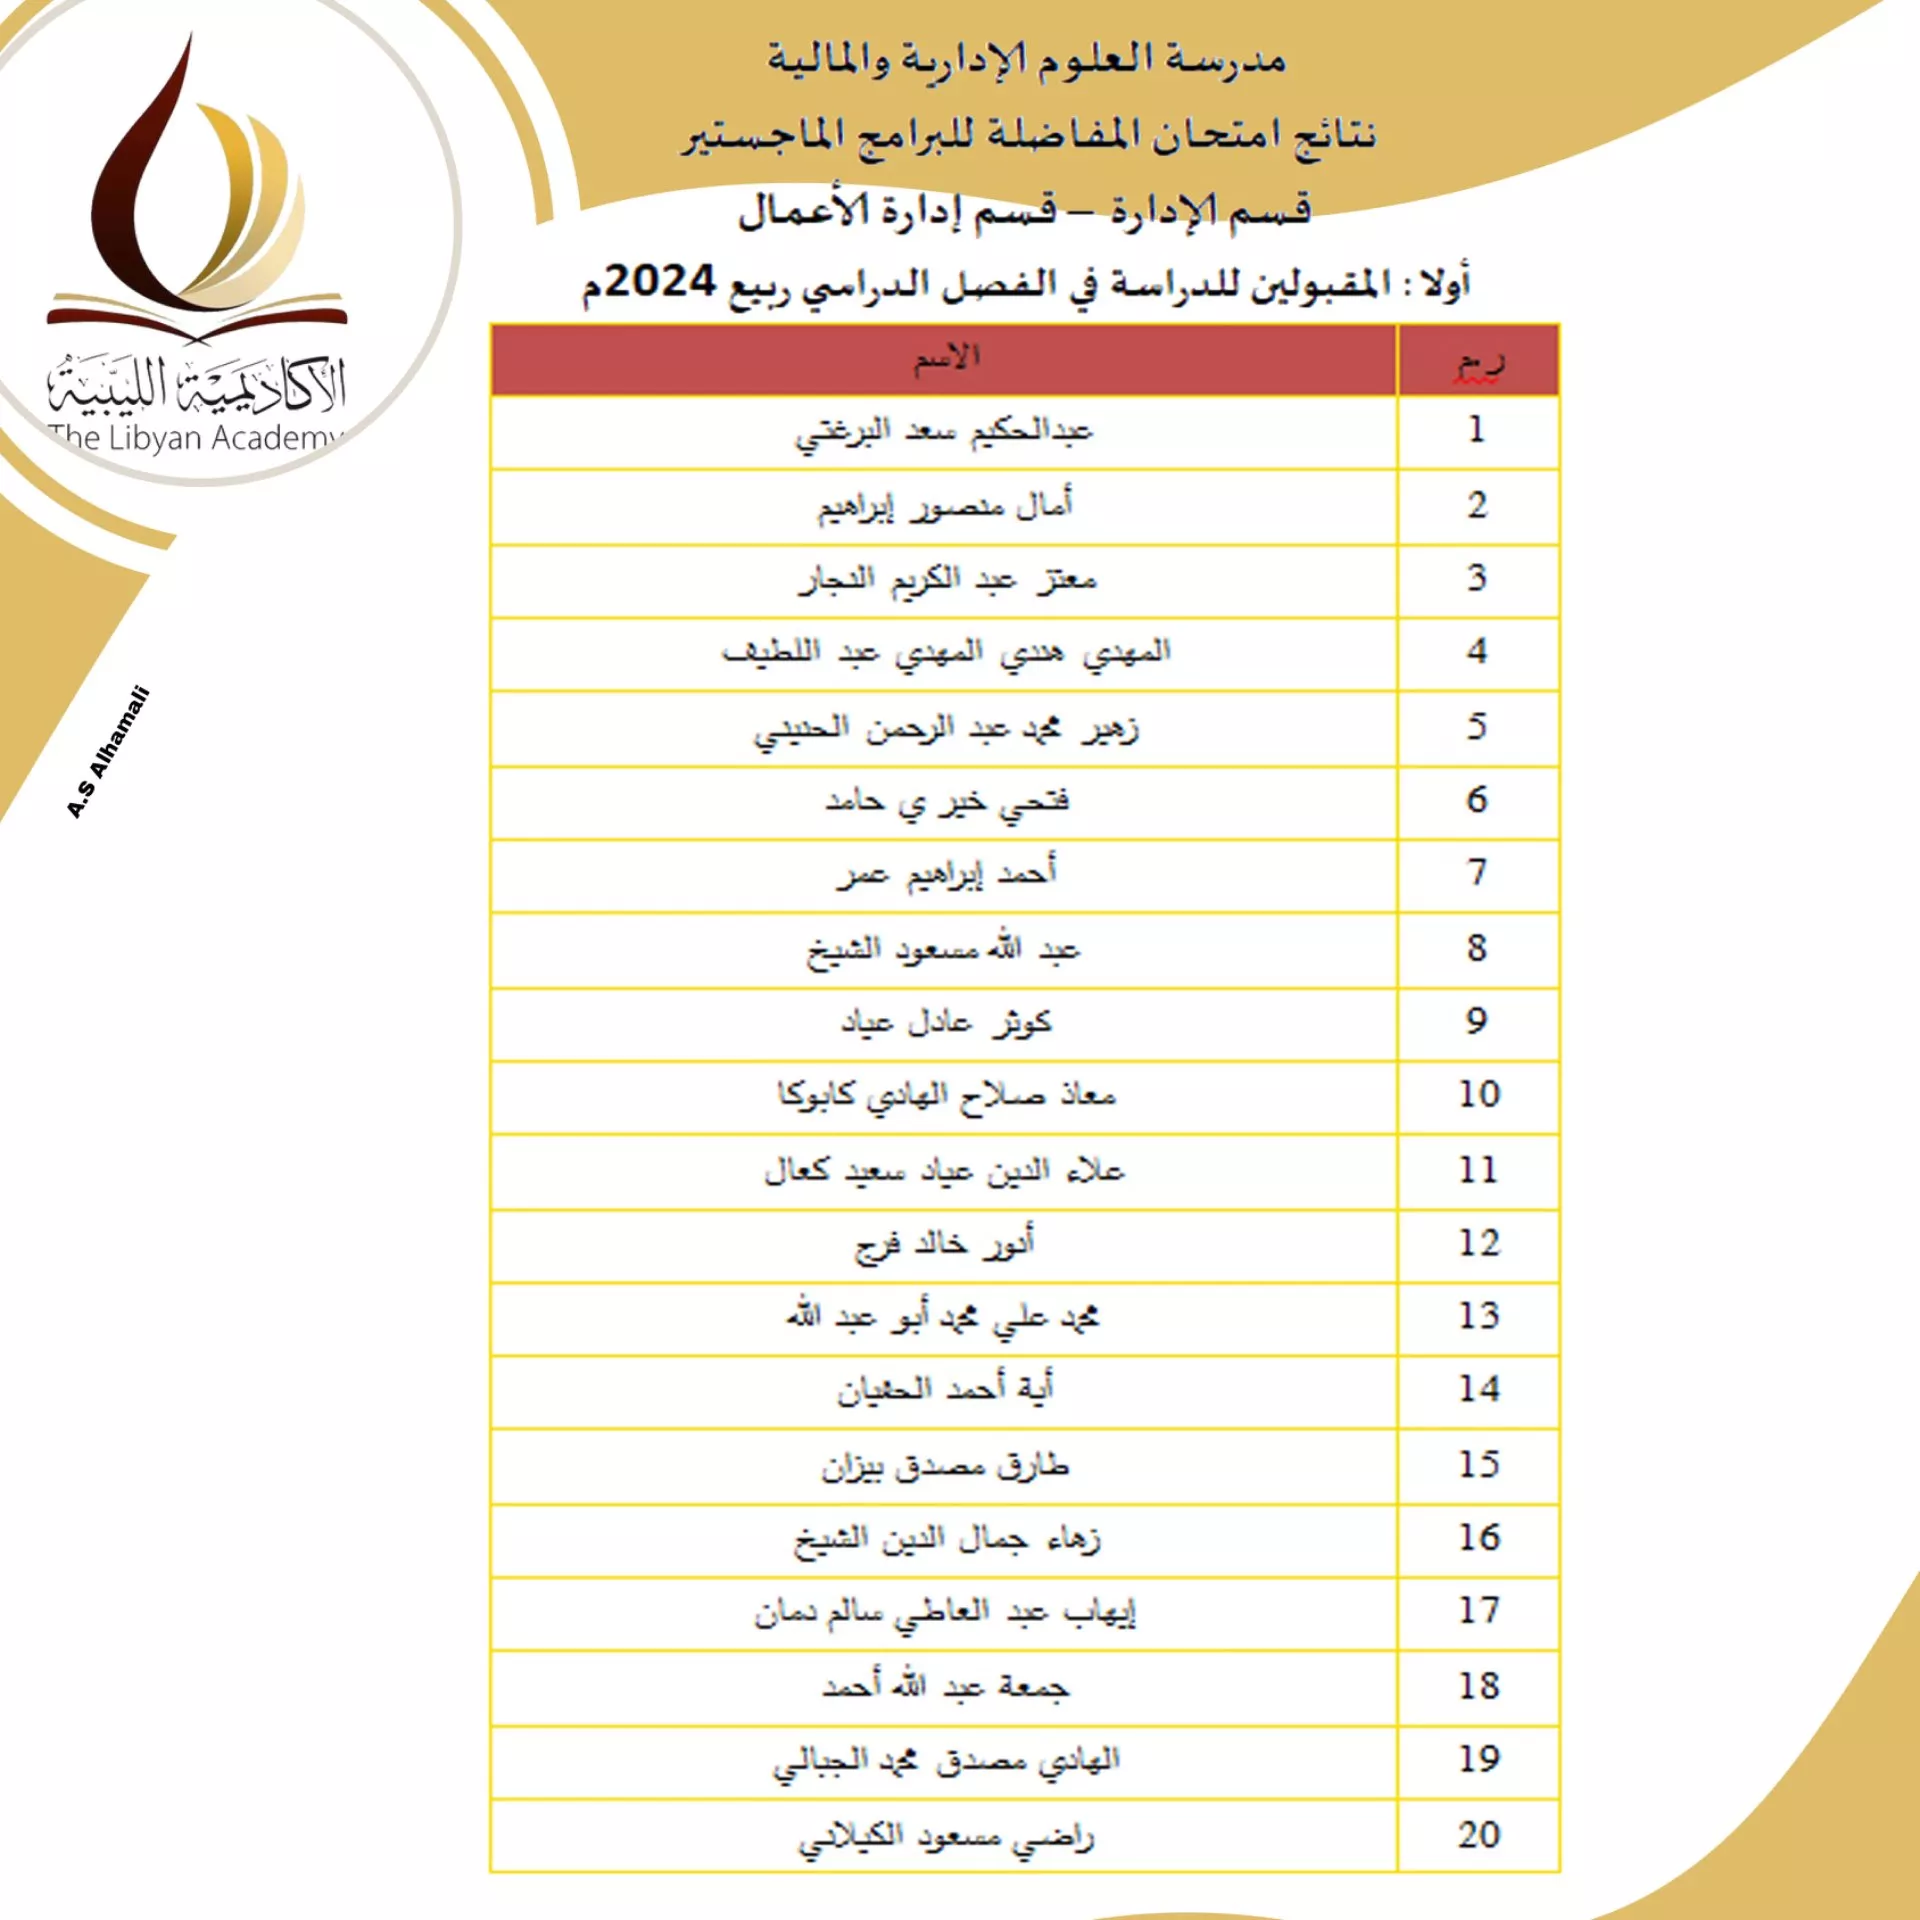 نتائج امتحانات المفاضلة للمتقدمين لدراسة الماجستير بالأكاديمية الليبية للدراسات العليا لمدرسة العلوم الادارية والمالية للفصل الدراسي خريف 2023/ 2024